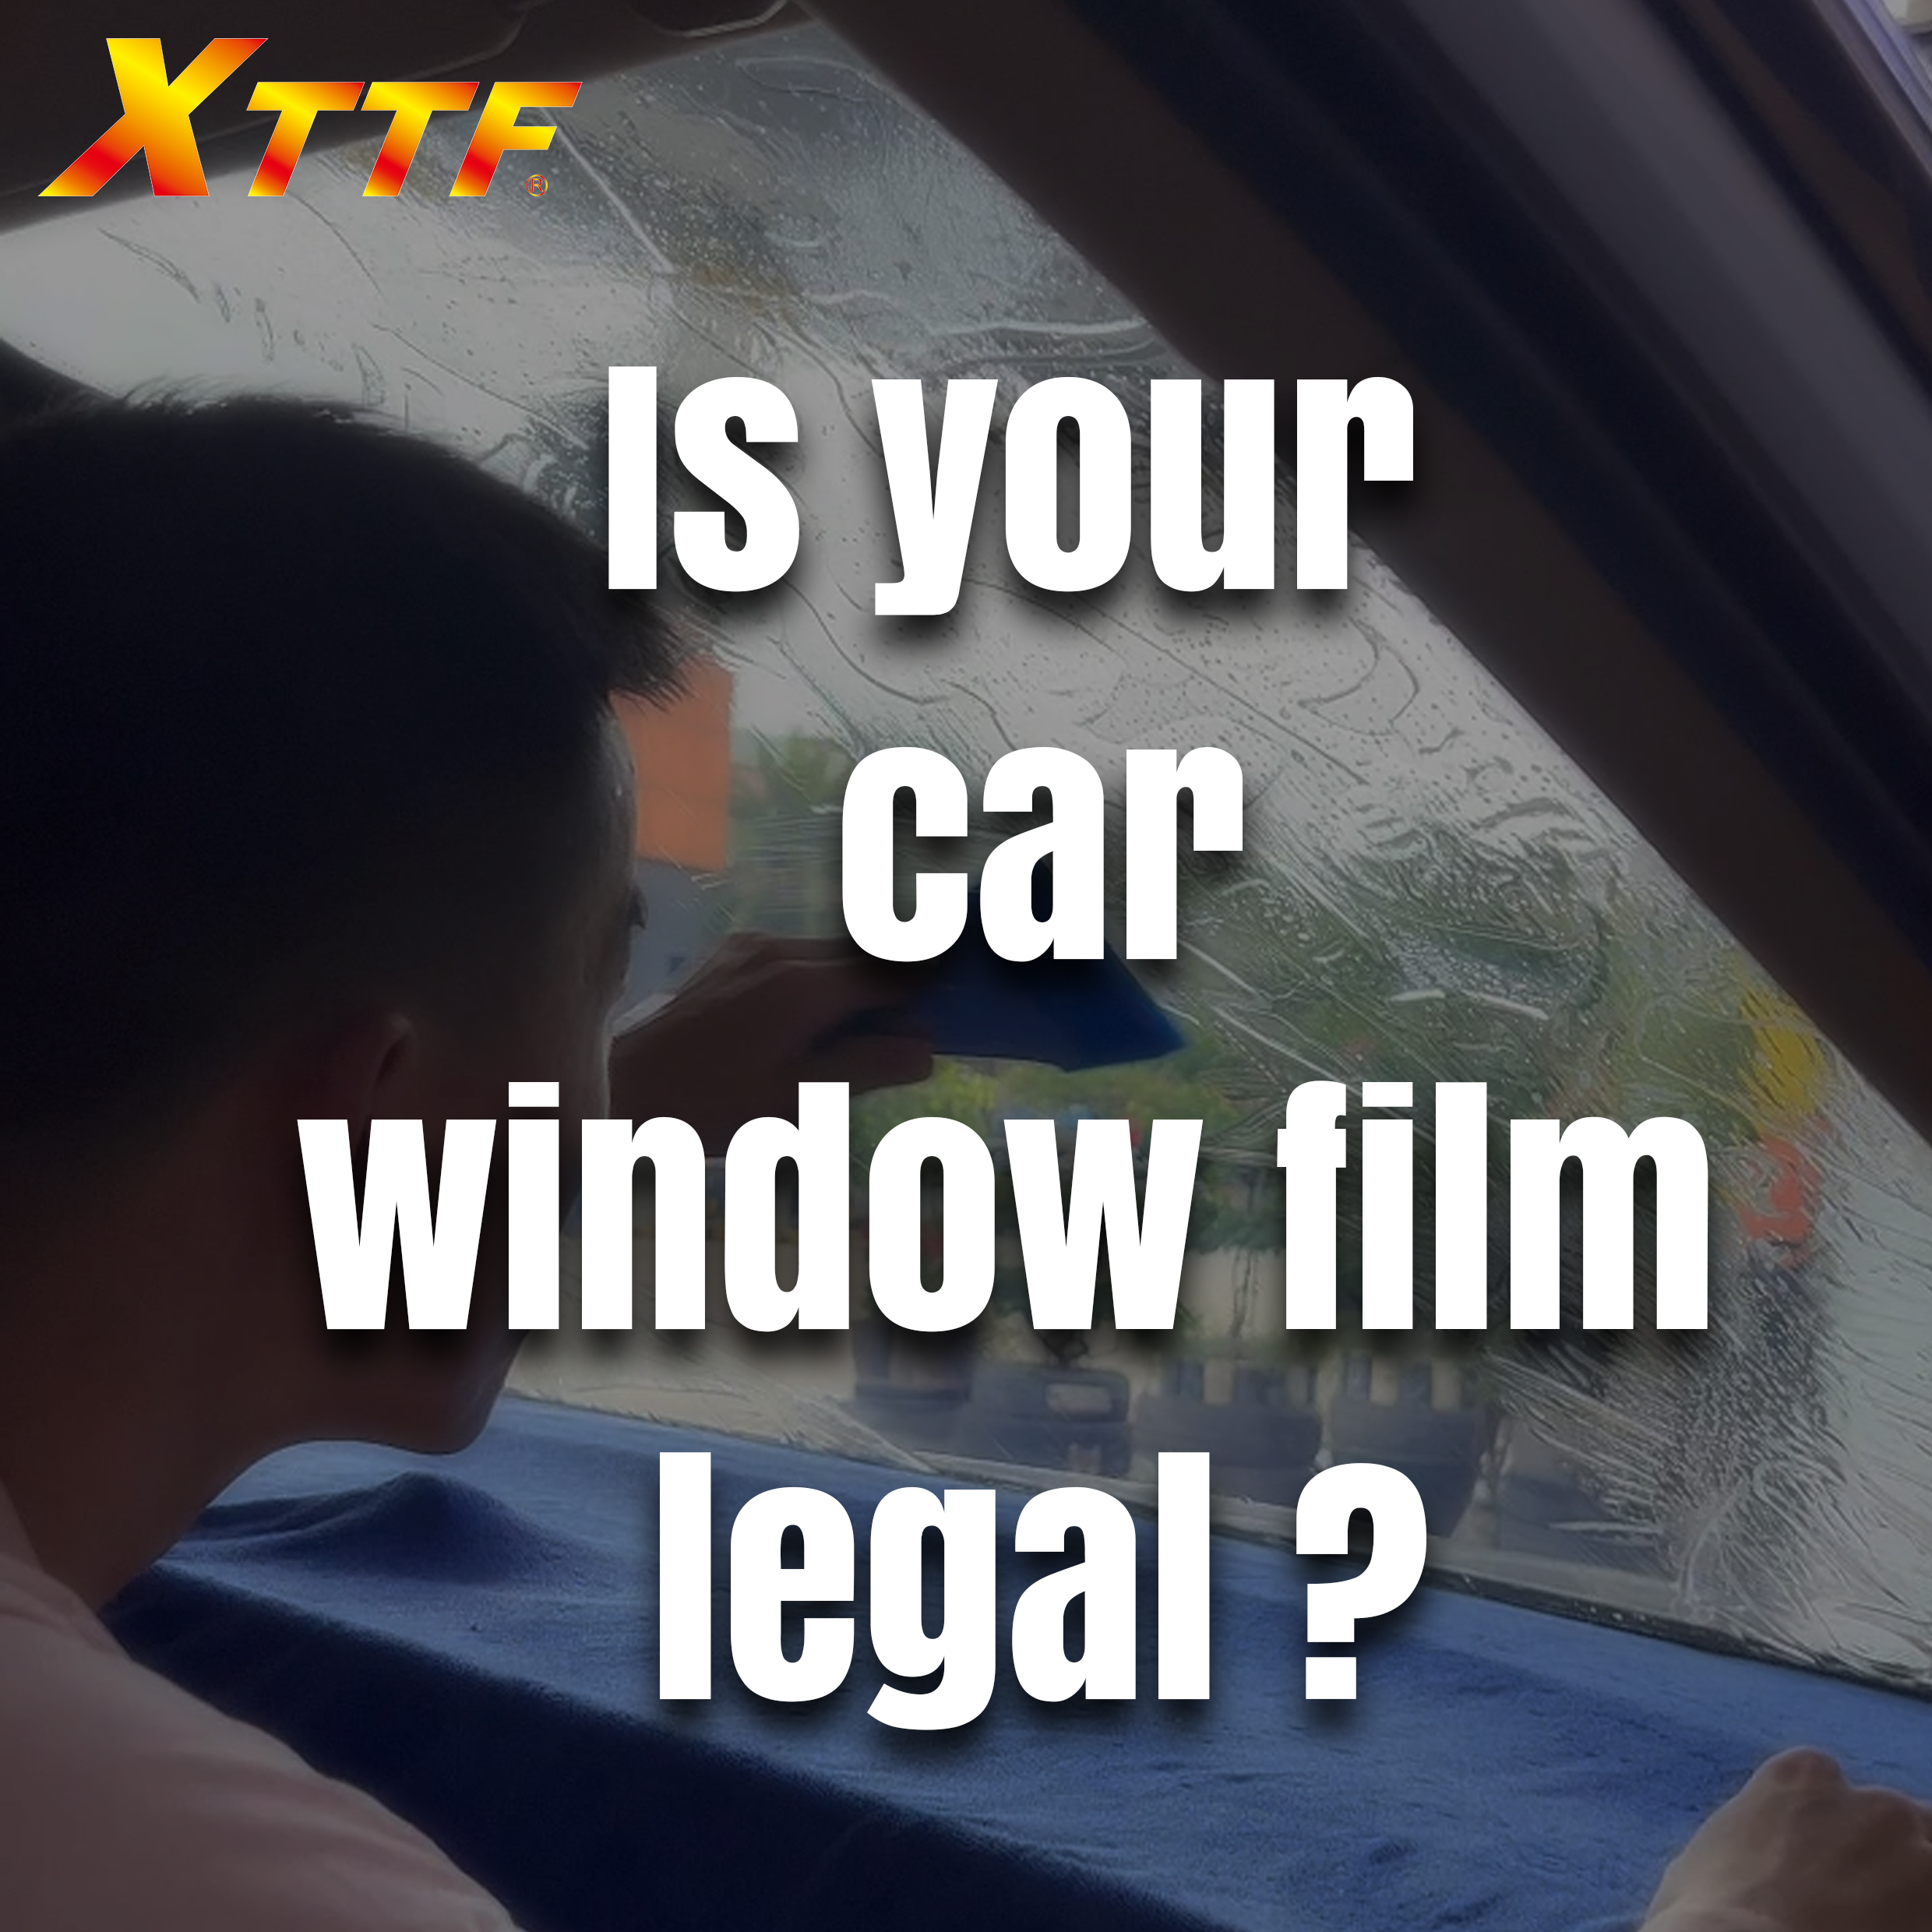 Phim dán kính ô tô của bạn có hợp pháp không?